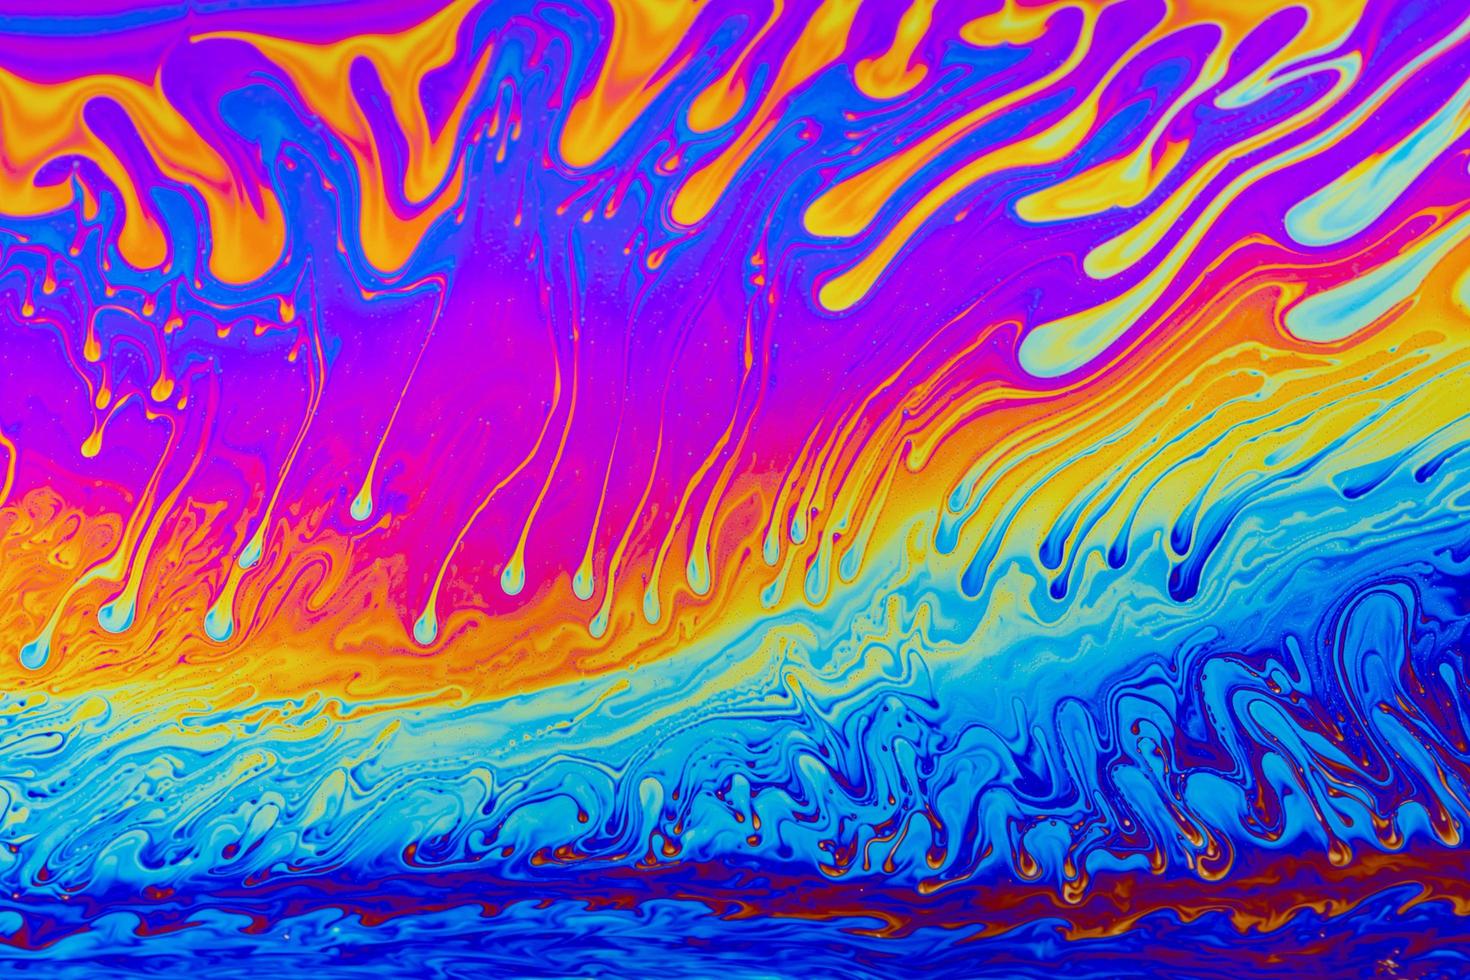 cores do arco-íris. fundo de padrões multicoloridos psicodélicos. foto macro de bolhas de sabão